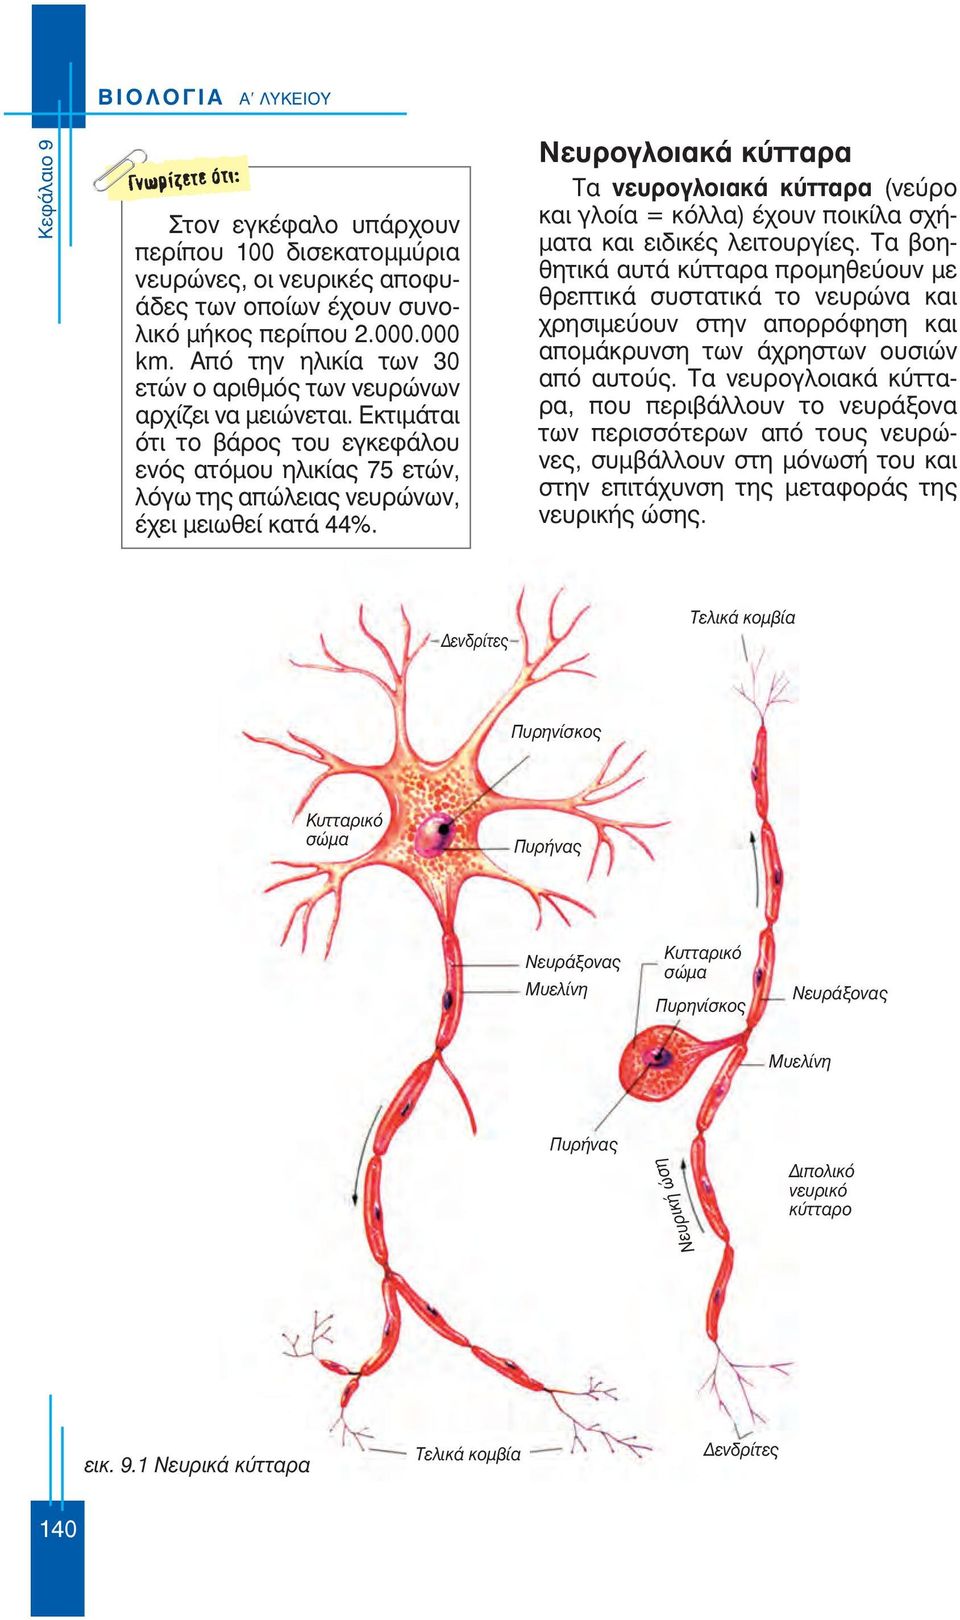 Νευρογλοιακά κύτταρα Τα νευρογλοιακά κύτταρα (νεύρο και γλοία = κόλλα) έχουν ποικίλα σχήματα και ειδικές λειτουργίες.